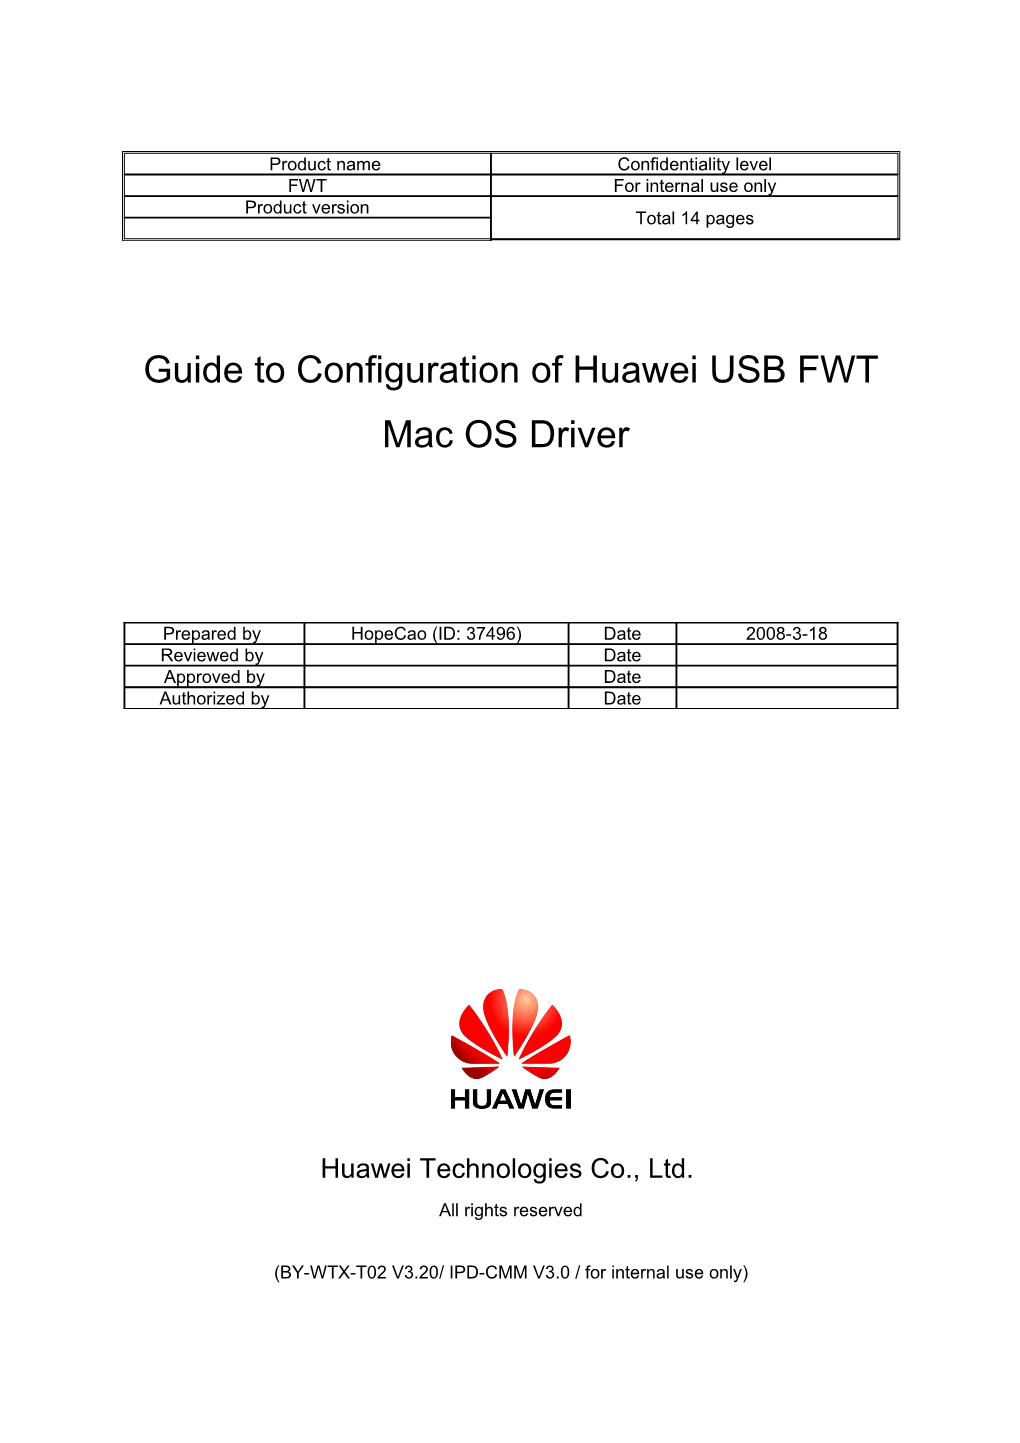 Huawei Technologies Co